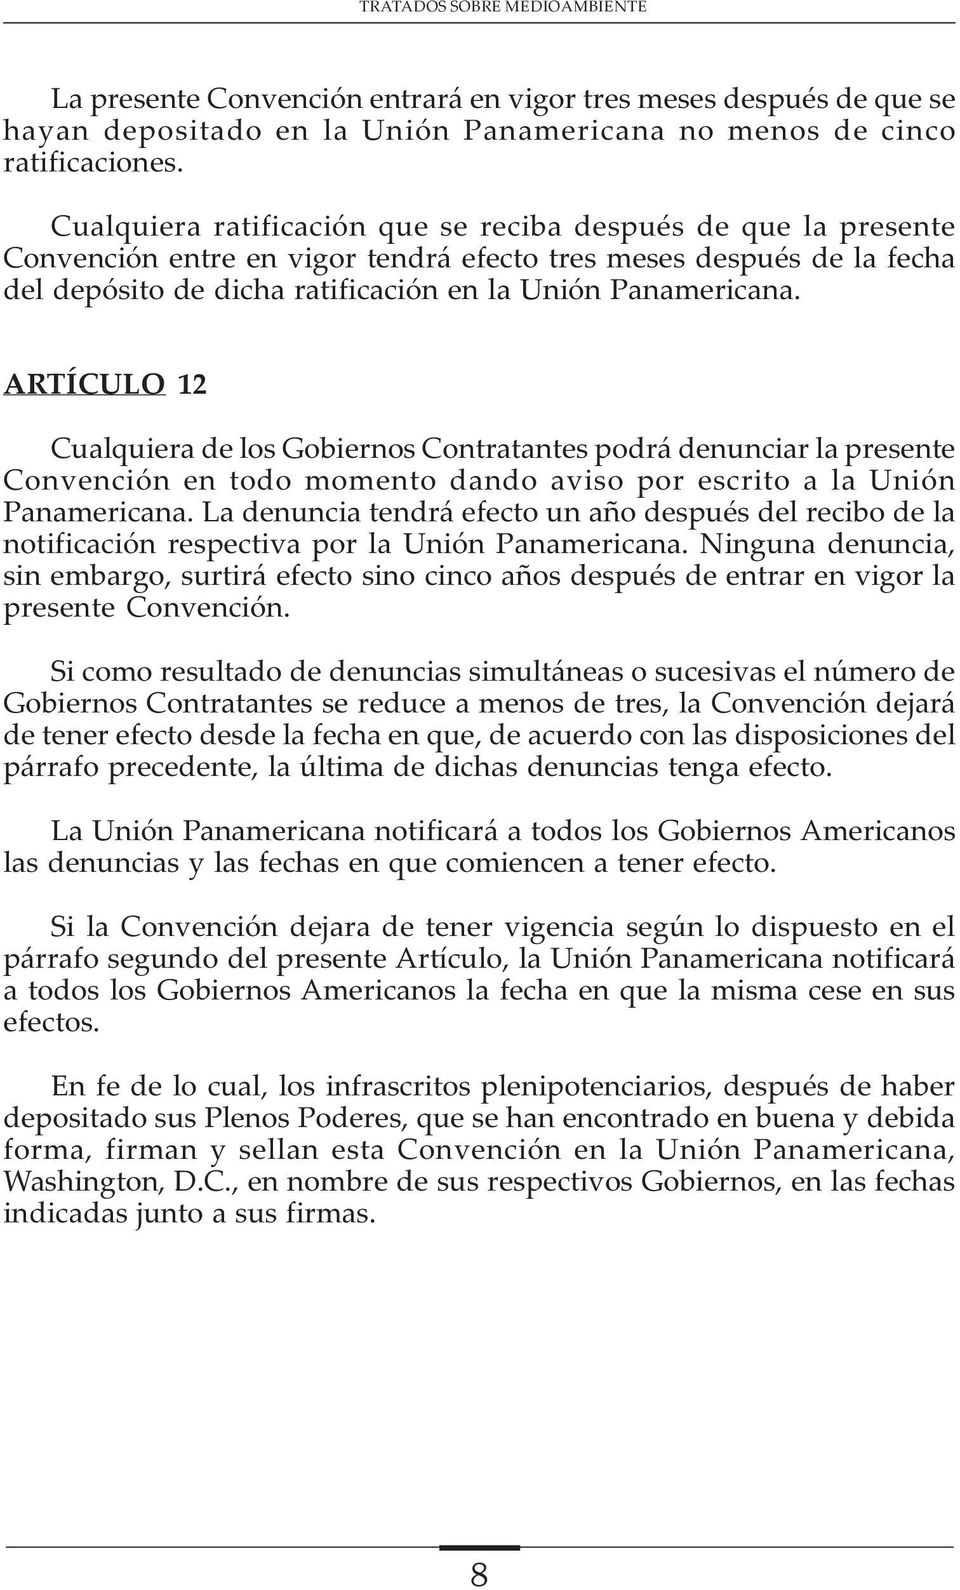 ARTÍCULO 12 Cualquiera de los Gobiernos Contratantes podrá denunciar la presente Convención en todo momento dando aviso por escrito a la Unión Panamericana.